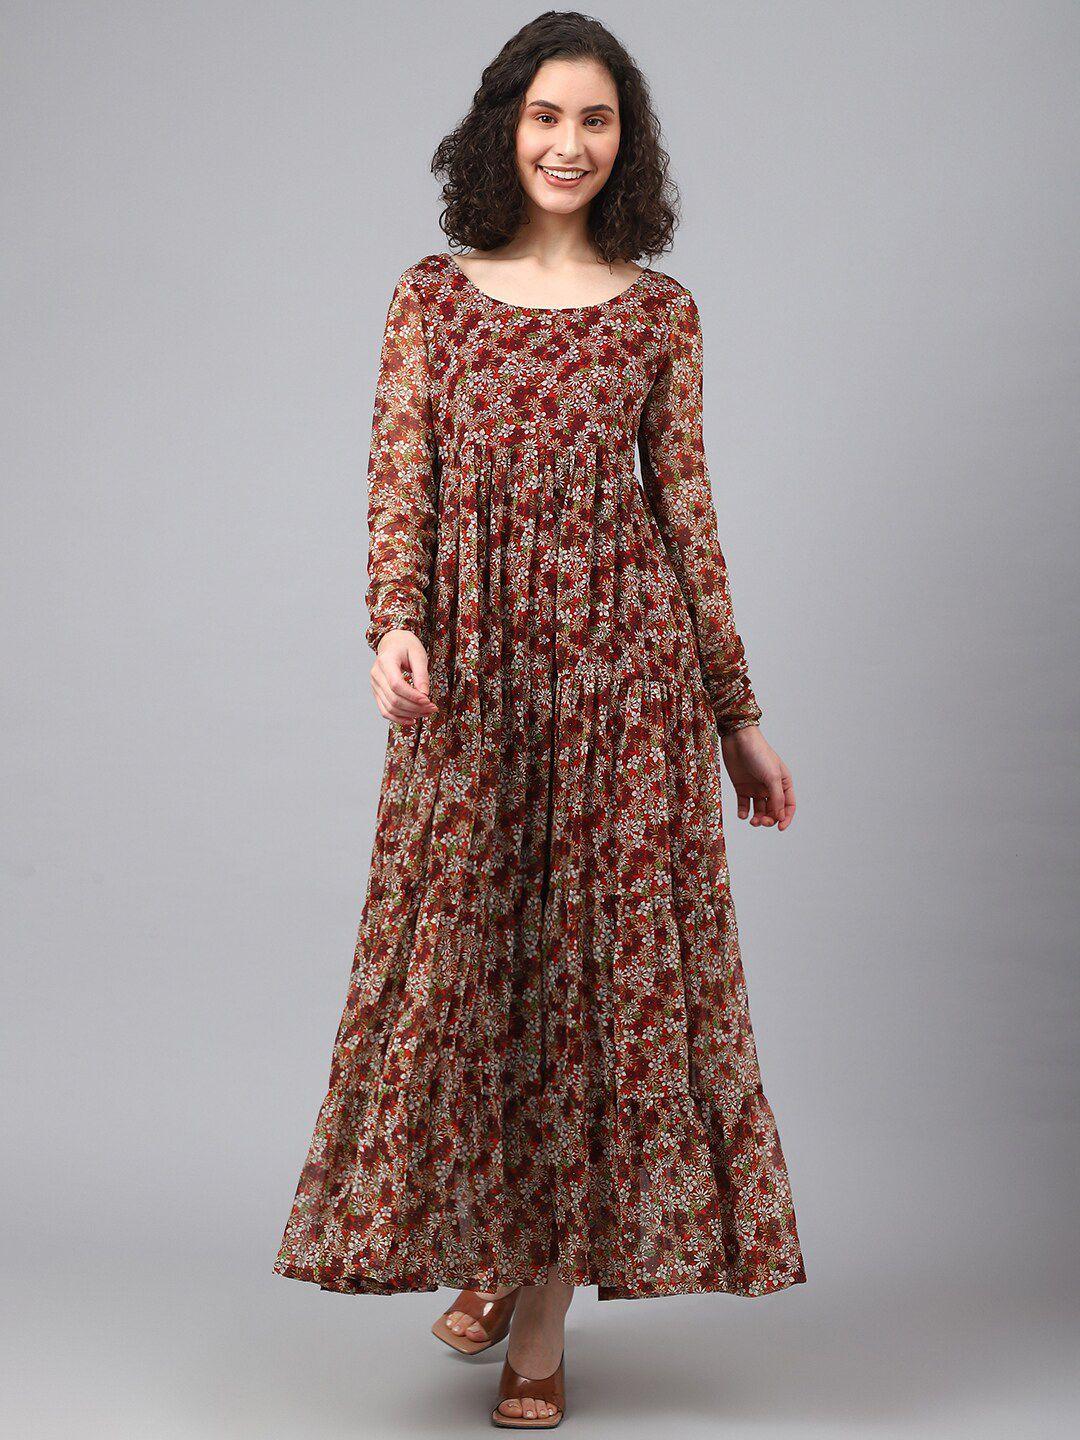 deebaco printed floral georgette maxi dress